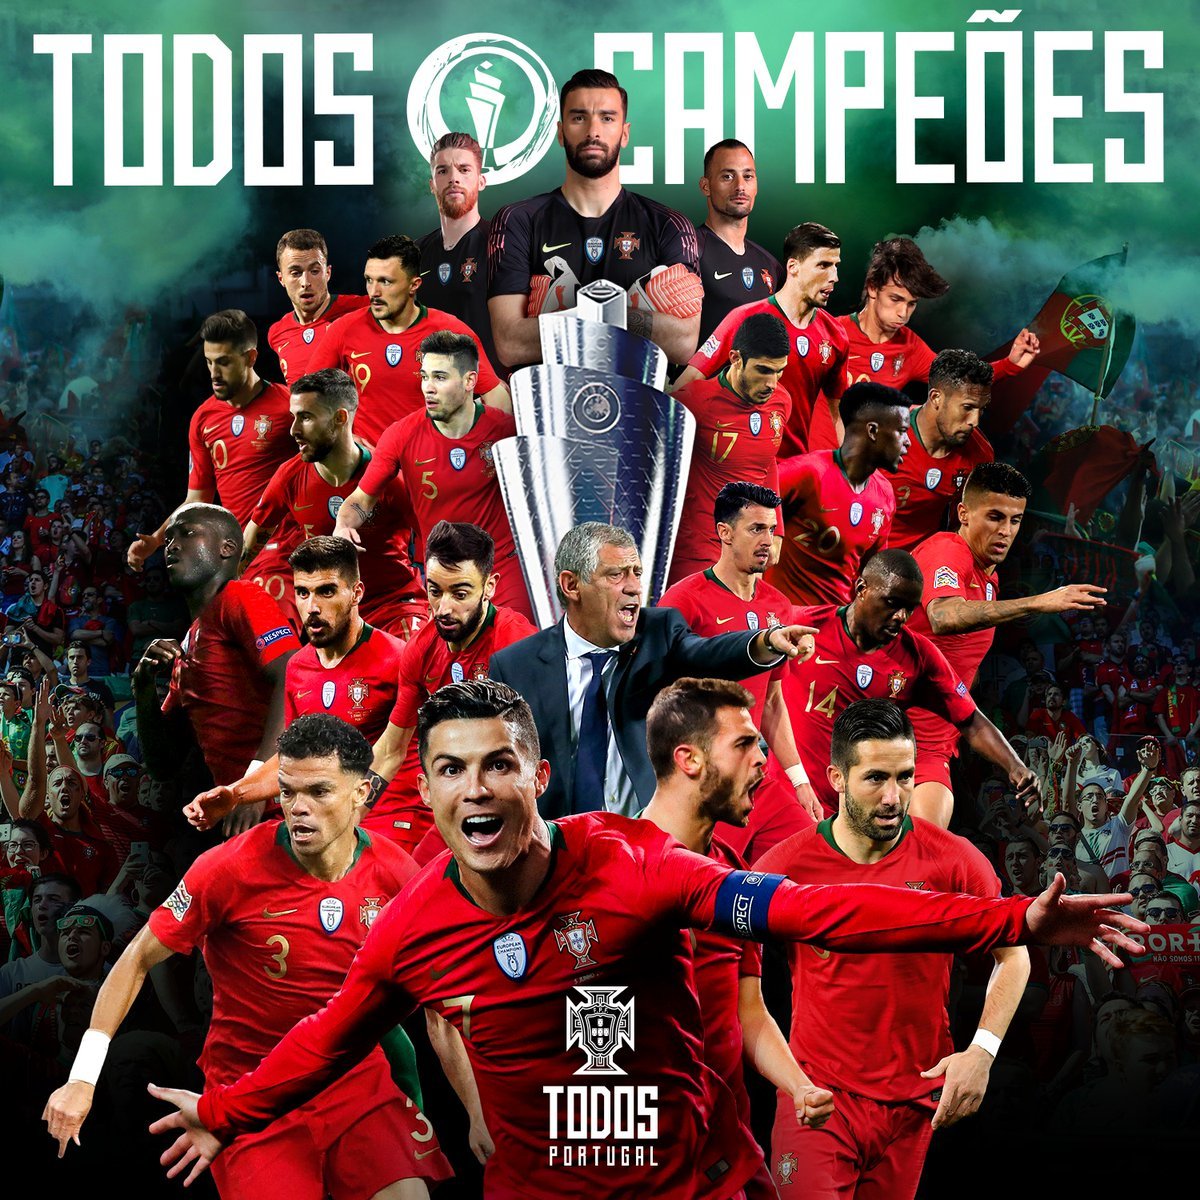 Với một màn trình diễn trong sáng, đội tuyển Bồ Đào Nha đã làm nên lịch sử bằng chiến thắng ấn tượng tại trận chung kết Nations League. Những bàn thắng đẹp mắt và khả năng tấn công đáng sợ của đội đã khiến người hâm mộ cảm thấy hạnh phúc và tự hào.